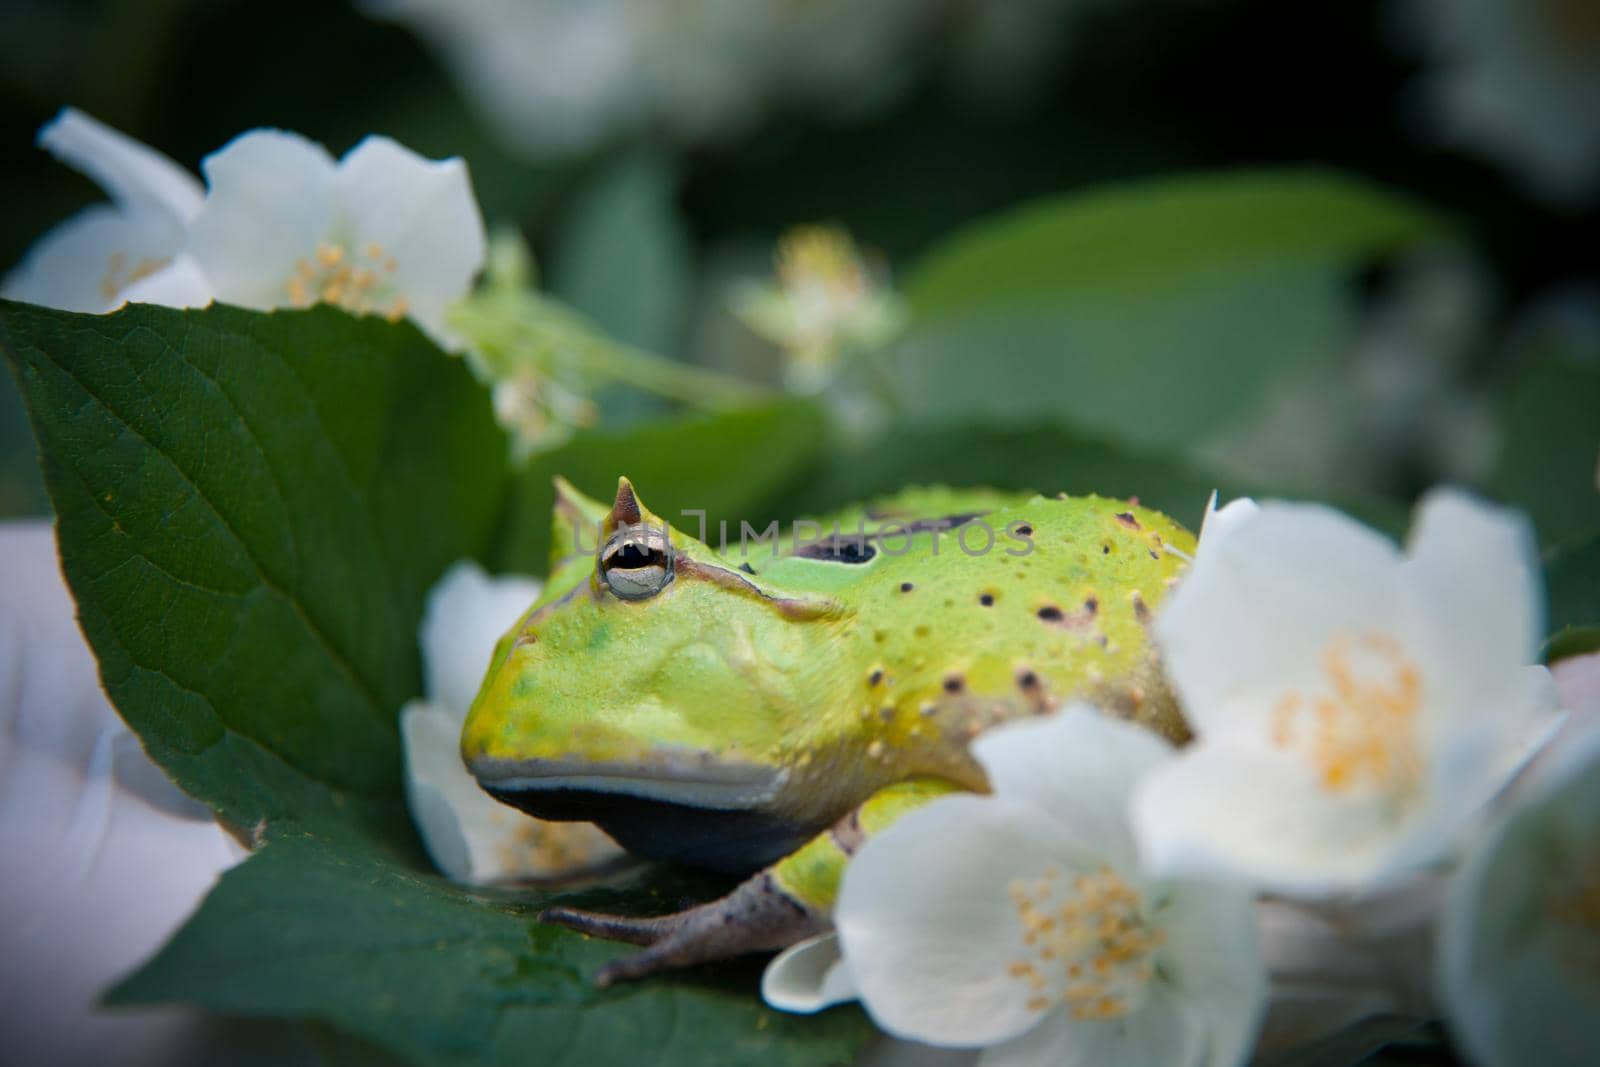 The Surinam horned frog, Ceratophrys cornuta, with philadelphus flower bush